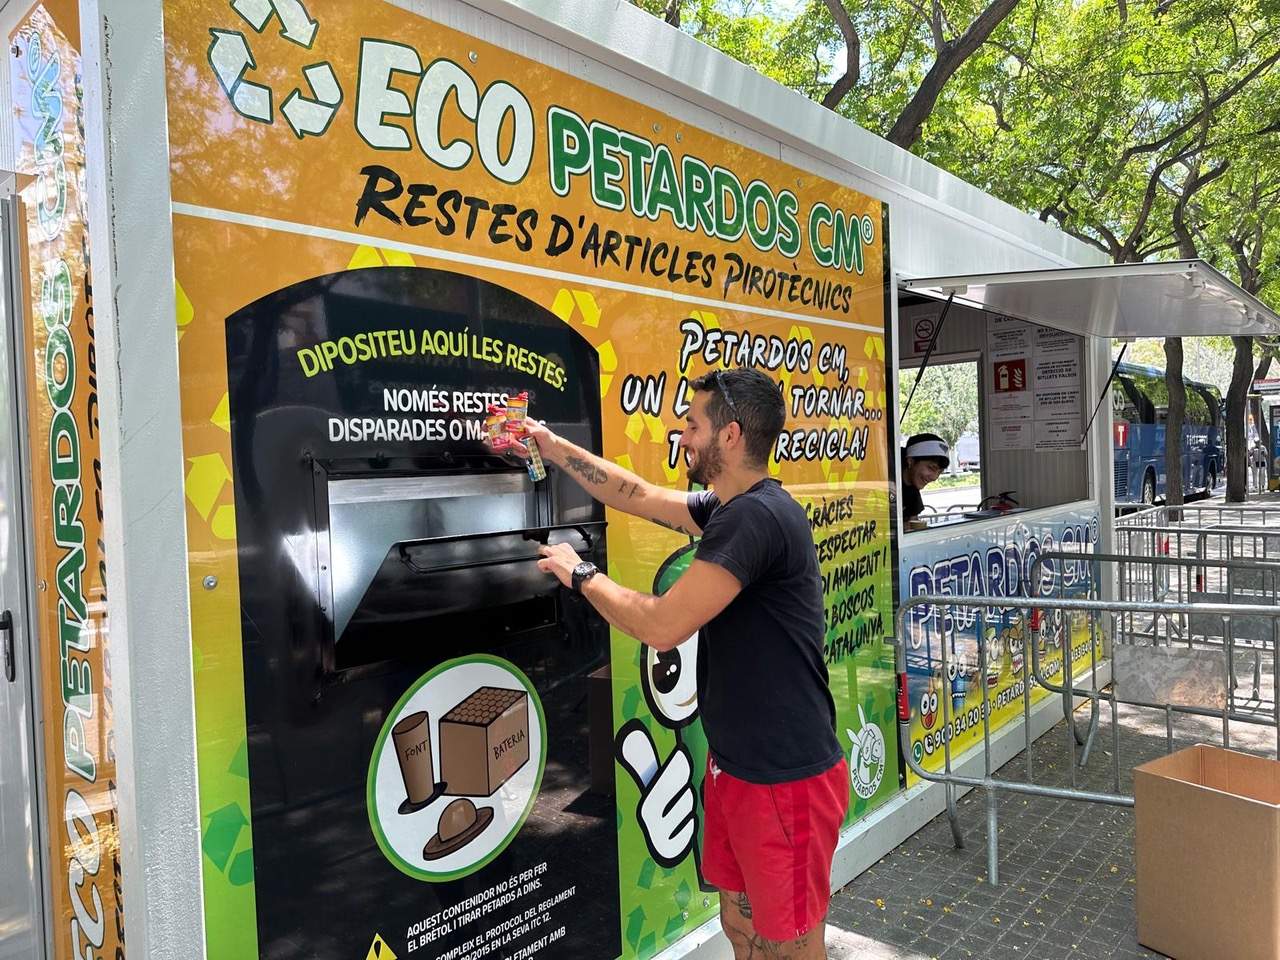 La catalana Petardos CM diseña un contenedor con IA para recoger los petardos